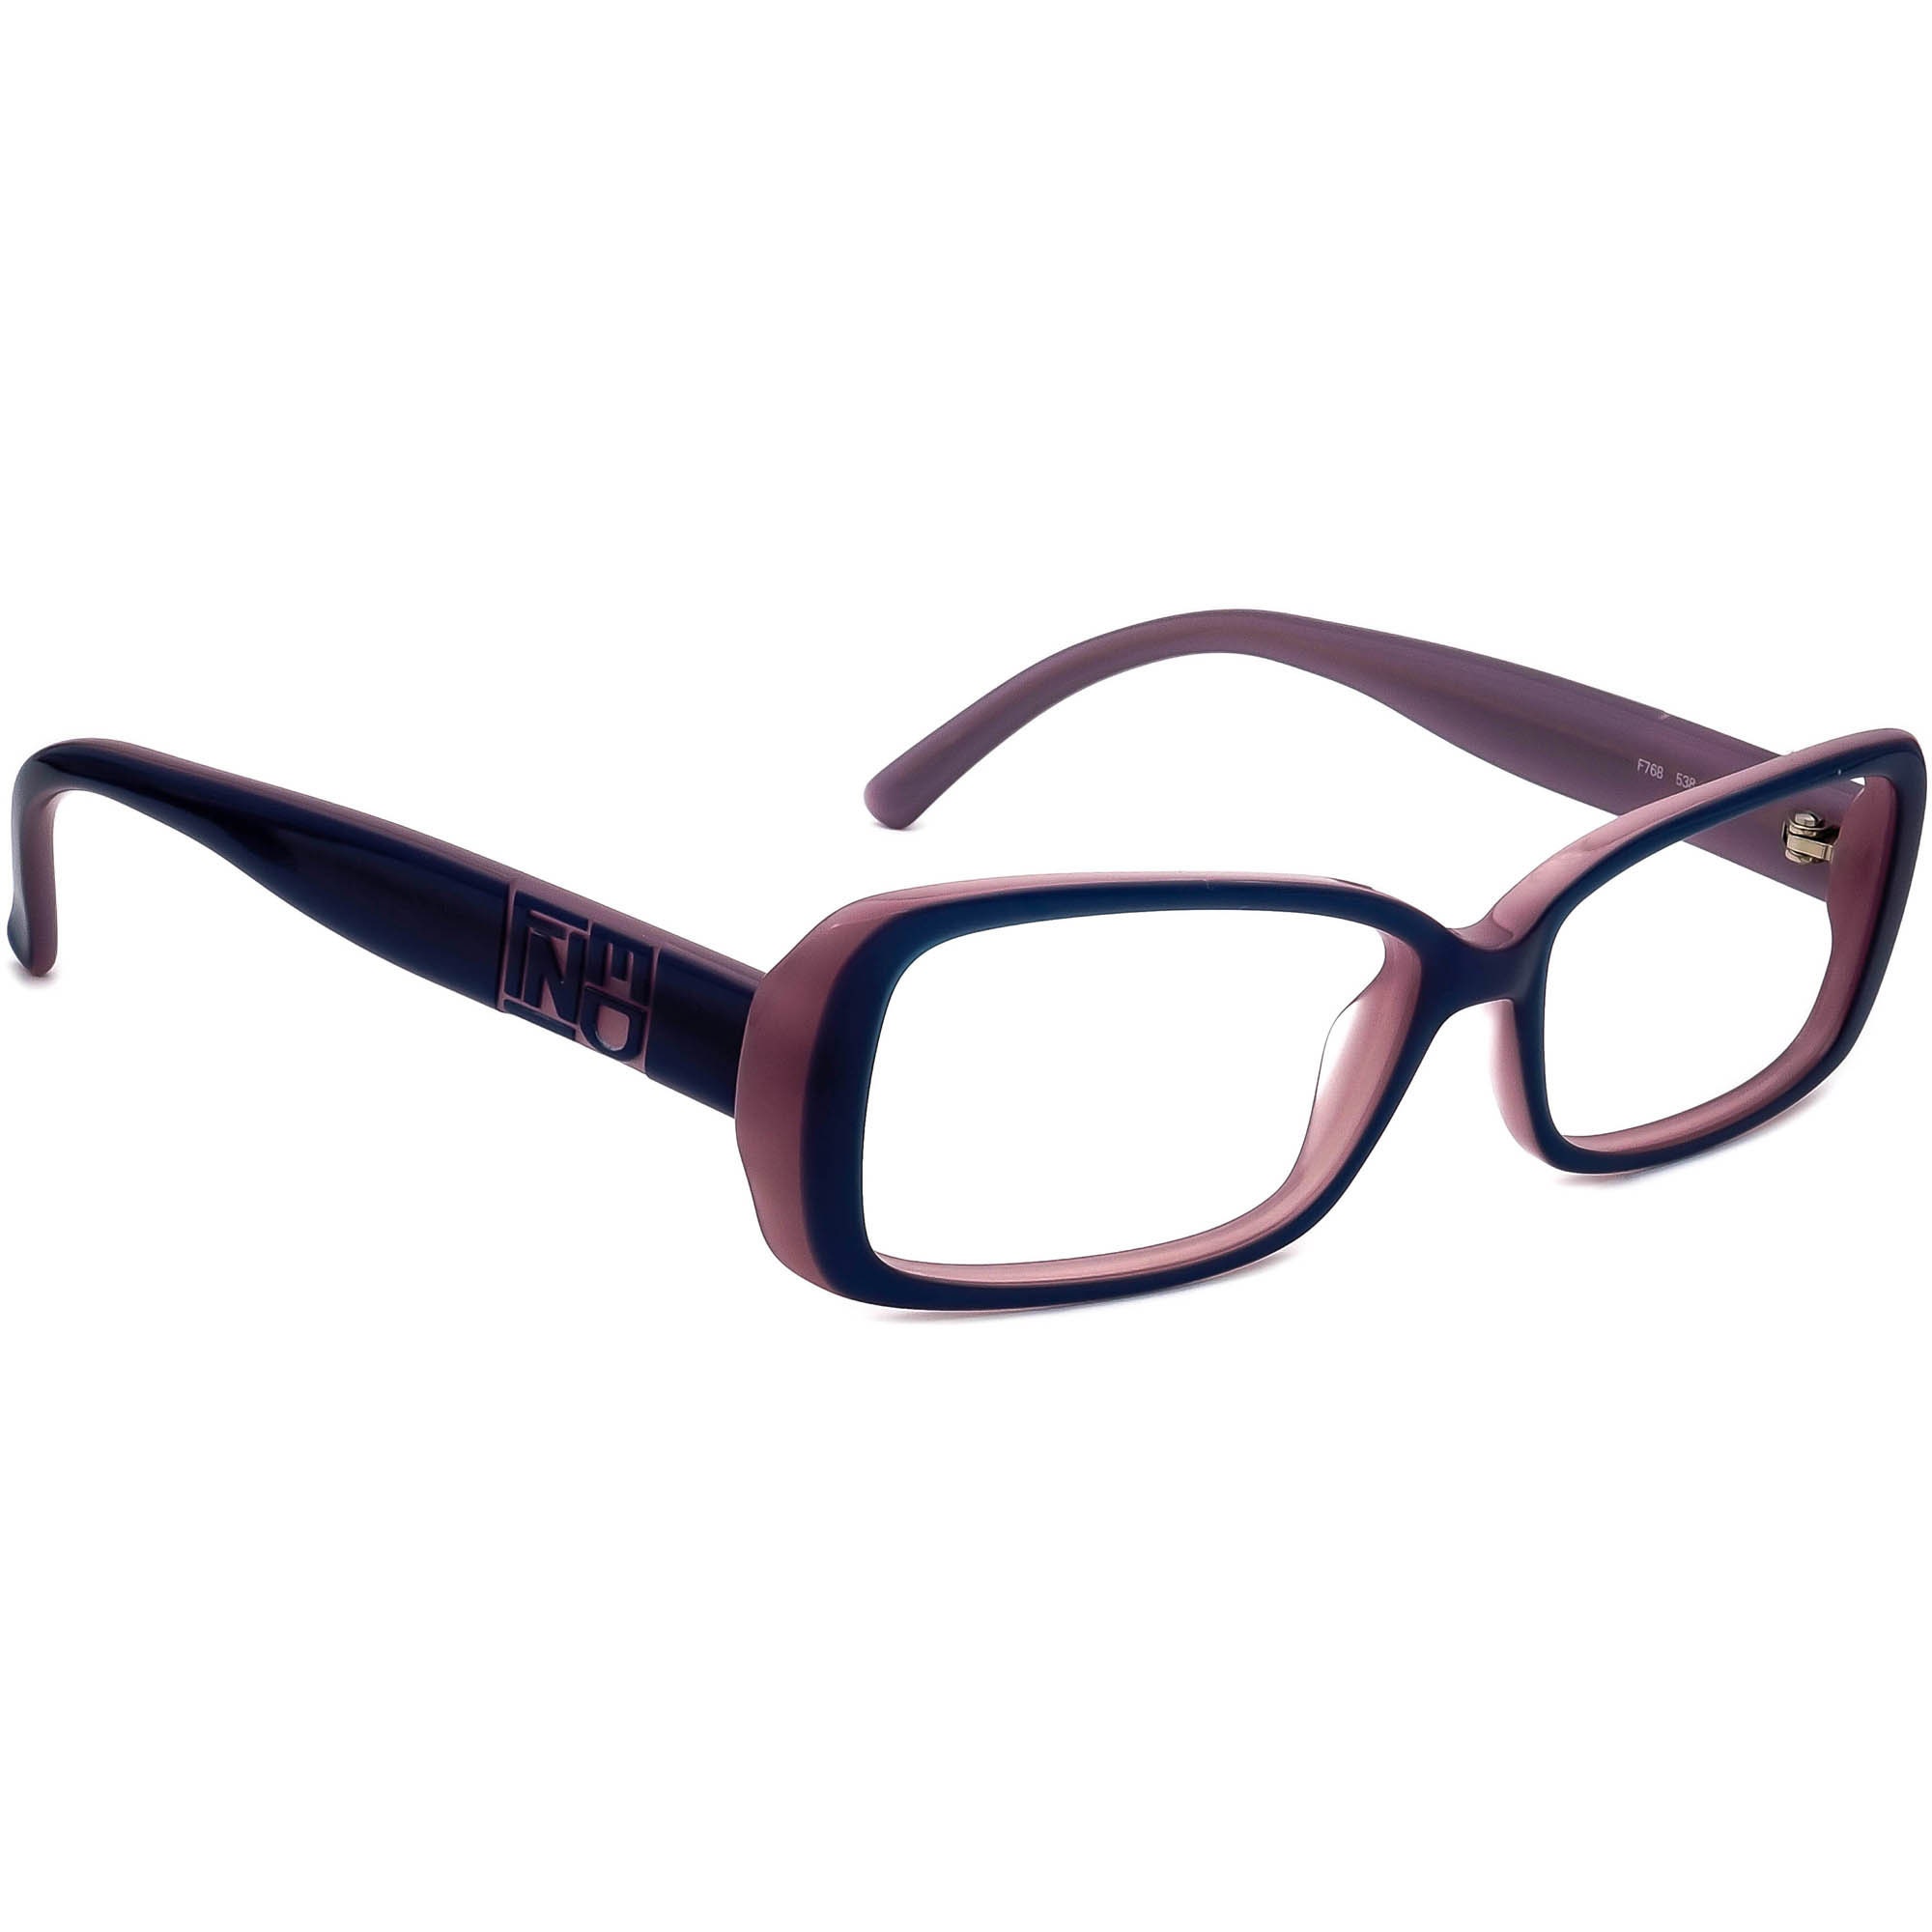 Chanel Women's Eyeglasses 3090 c.730 Burgundy Oval Frame 51[]16 135